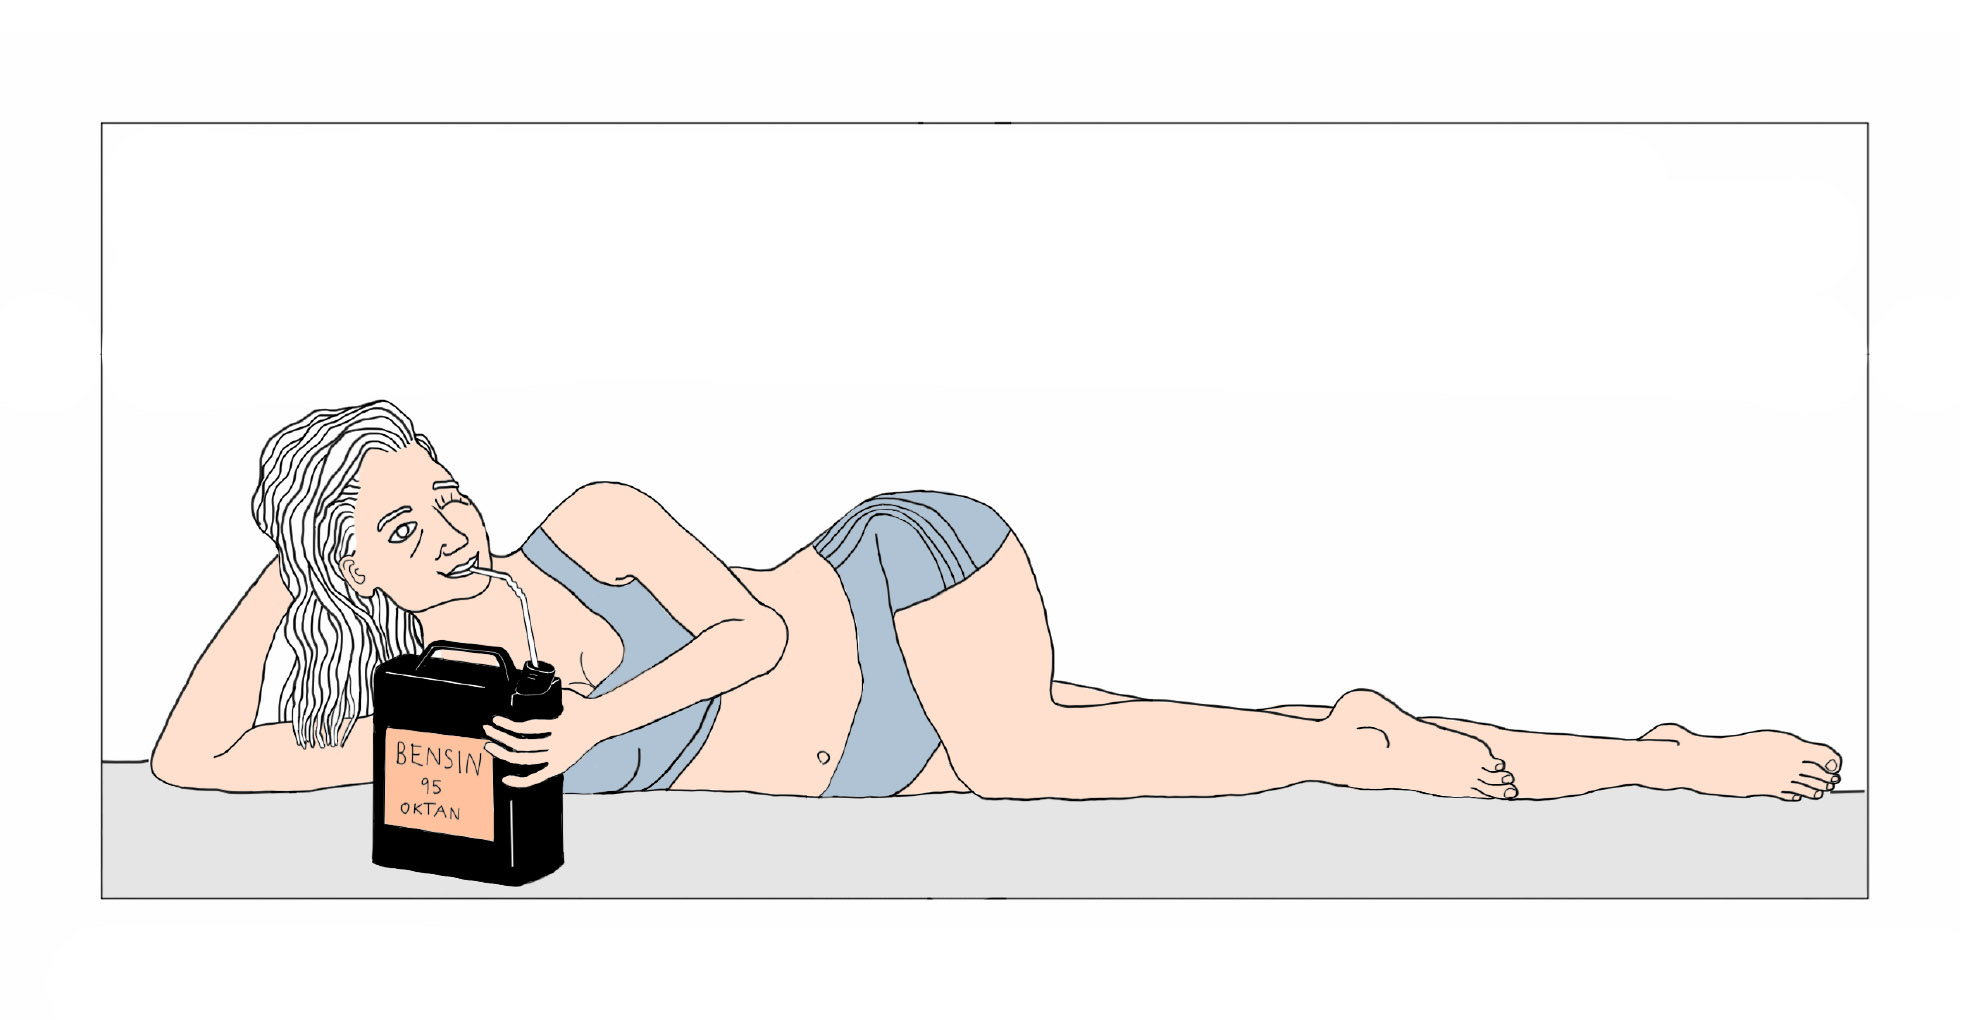 Kvinna dricker bensin, illustration till artikeln